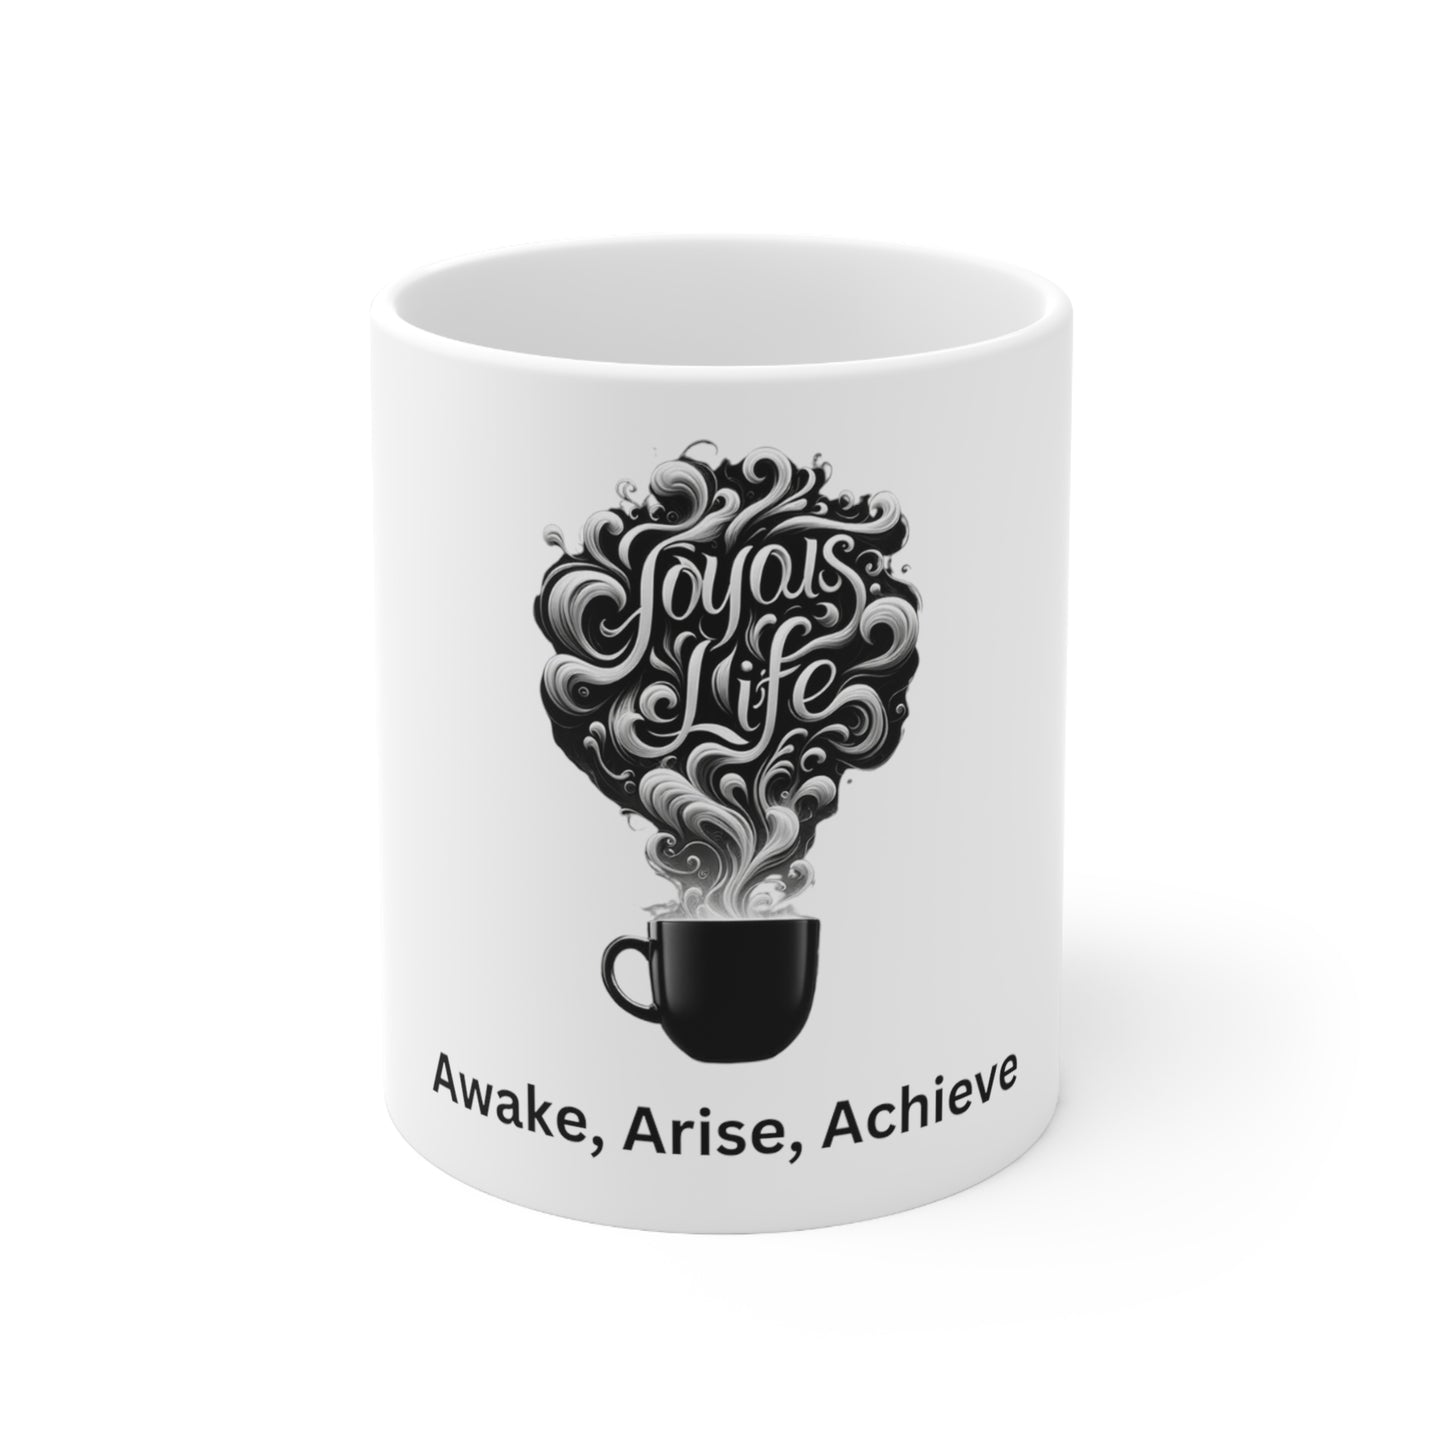 Awake, Arise, Achieve - Motivational Ceramic Mug 11oz, Joyous Life Journals